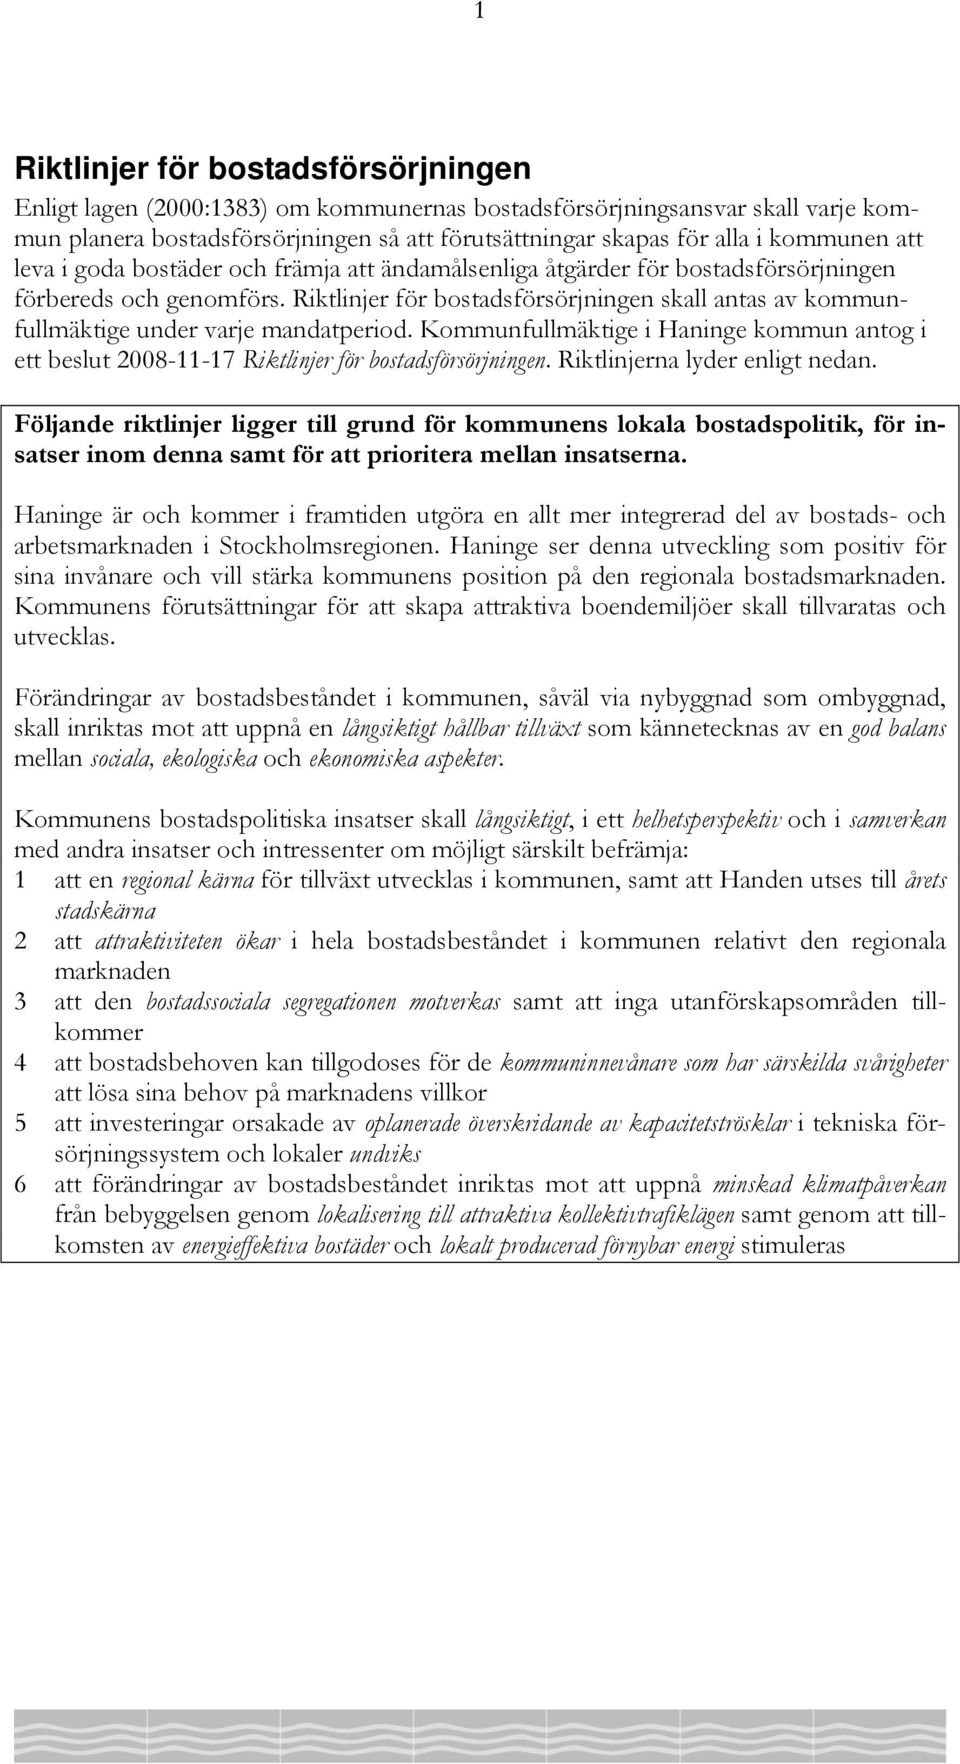 Riktlinjer för bostadsförsörjningen skall antas av kommunfullmäktige under varje mandatperiod. Kommunfullmäktige i Haninge kommun antog i ett beslut 2008-11-17 Riktlinjer för bostadsförsörjningen.